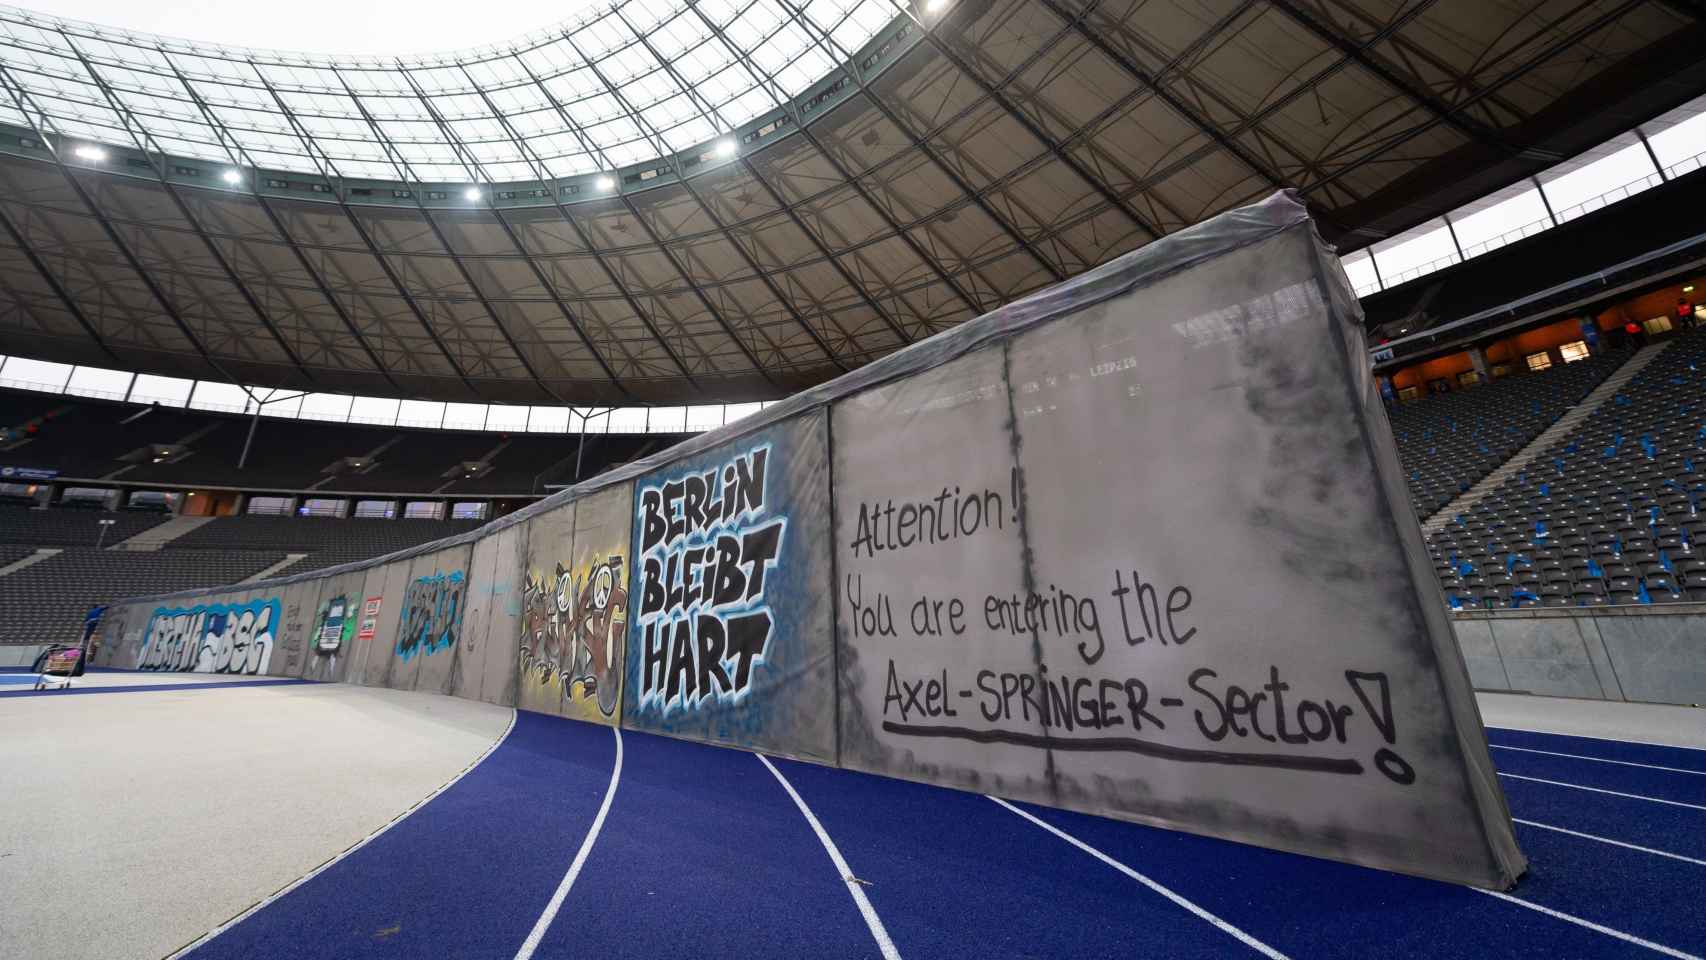 El acto del Hertha Berlin en el 30 aniversario de la caída del Muro